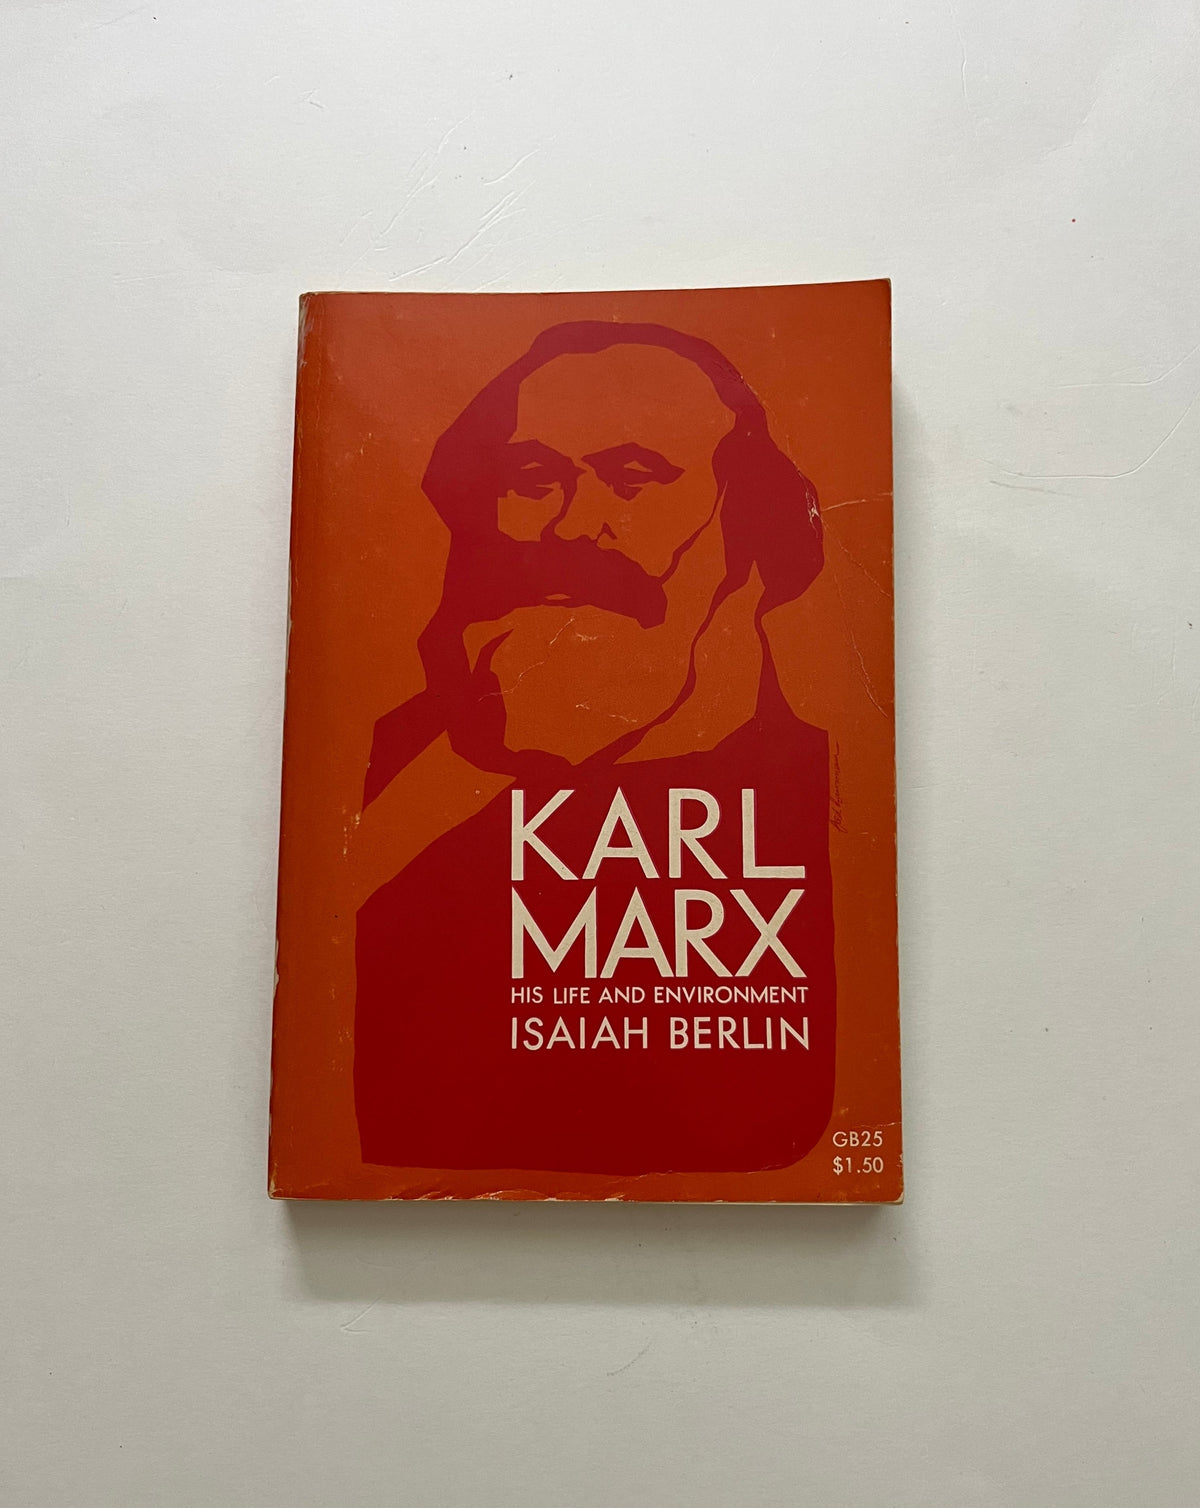 Karl Marx: His Life and Environment by Isaiah Berlin